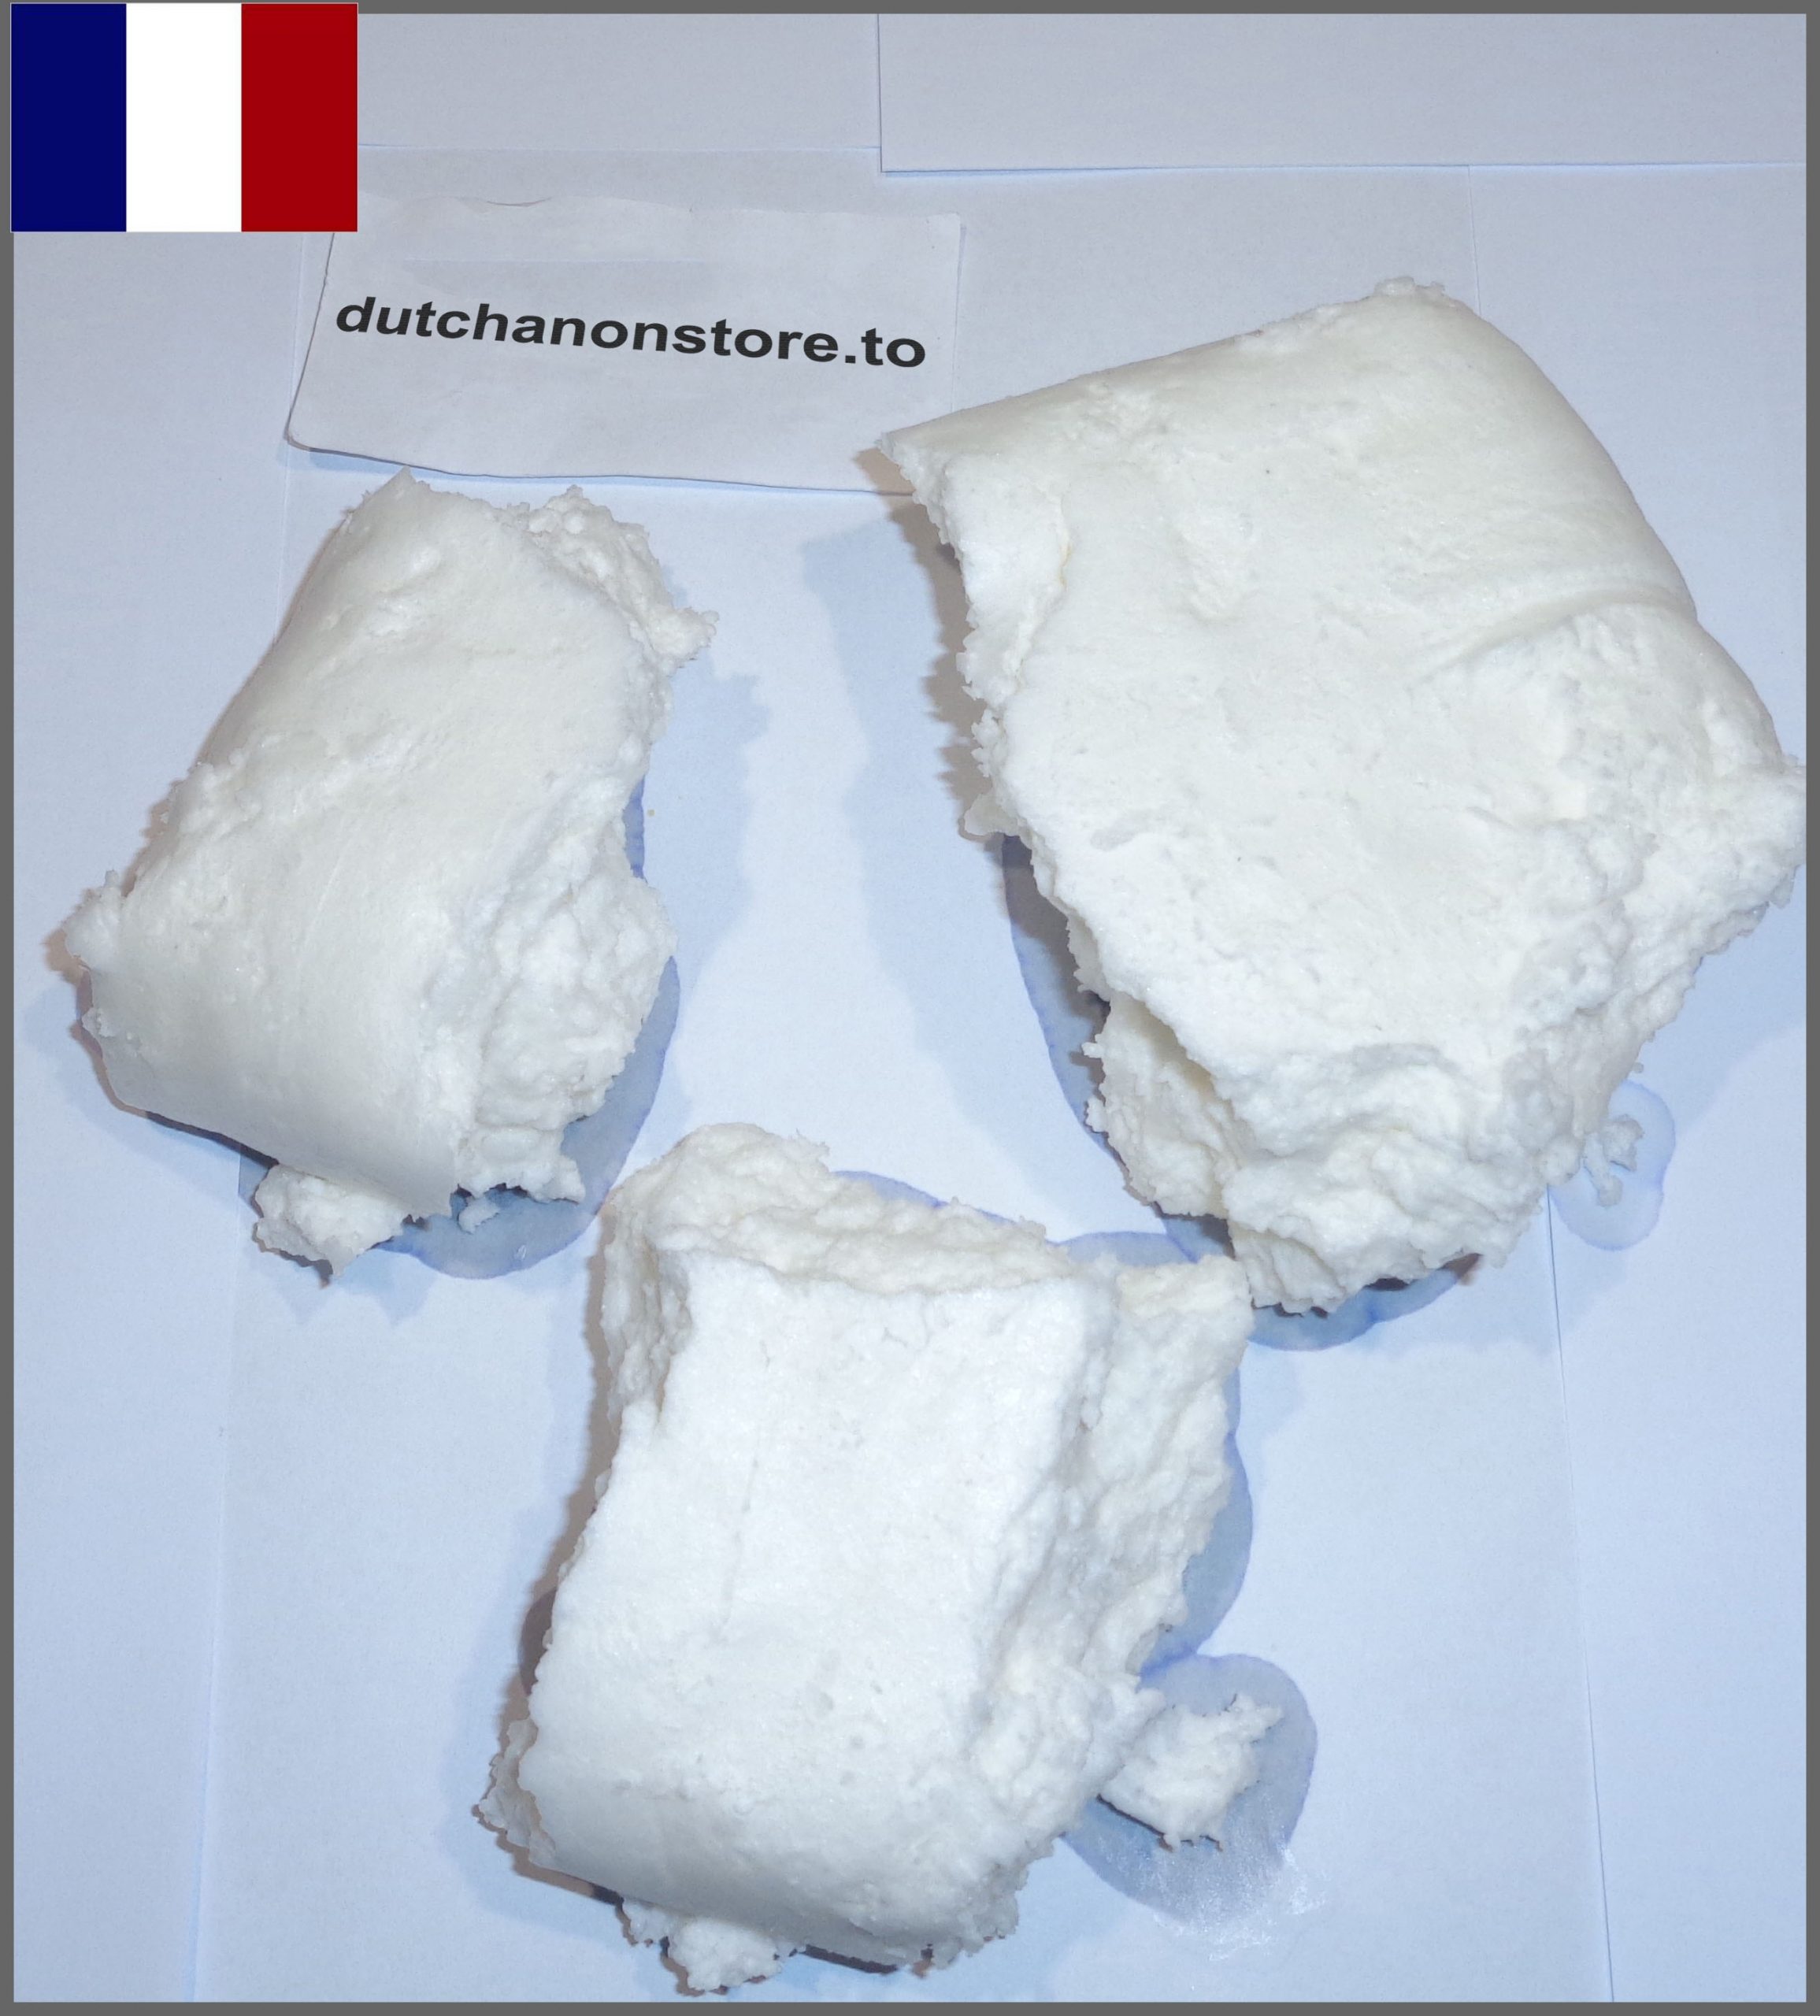 5g-1kg SPEED PASTE 76% (France 2 France) Image